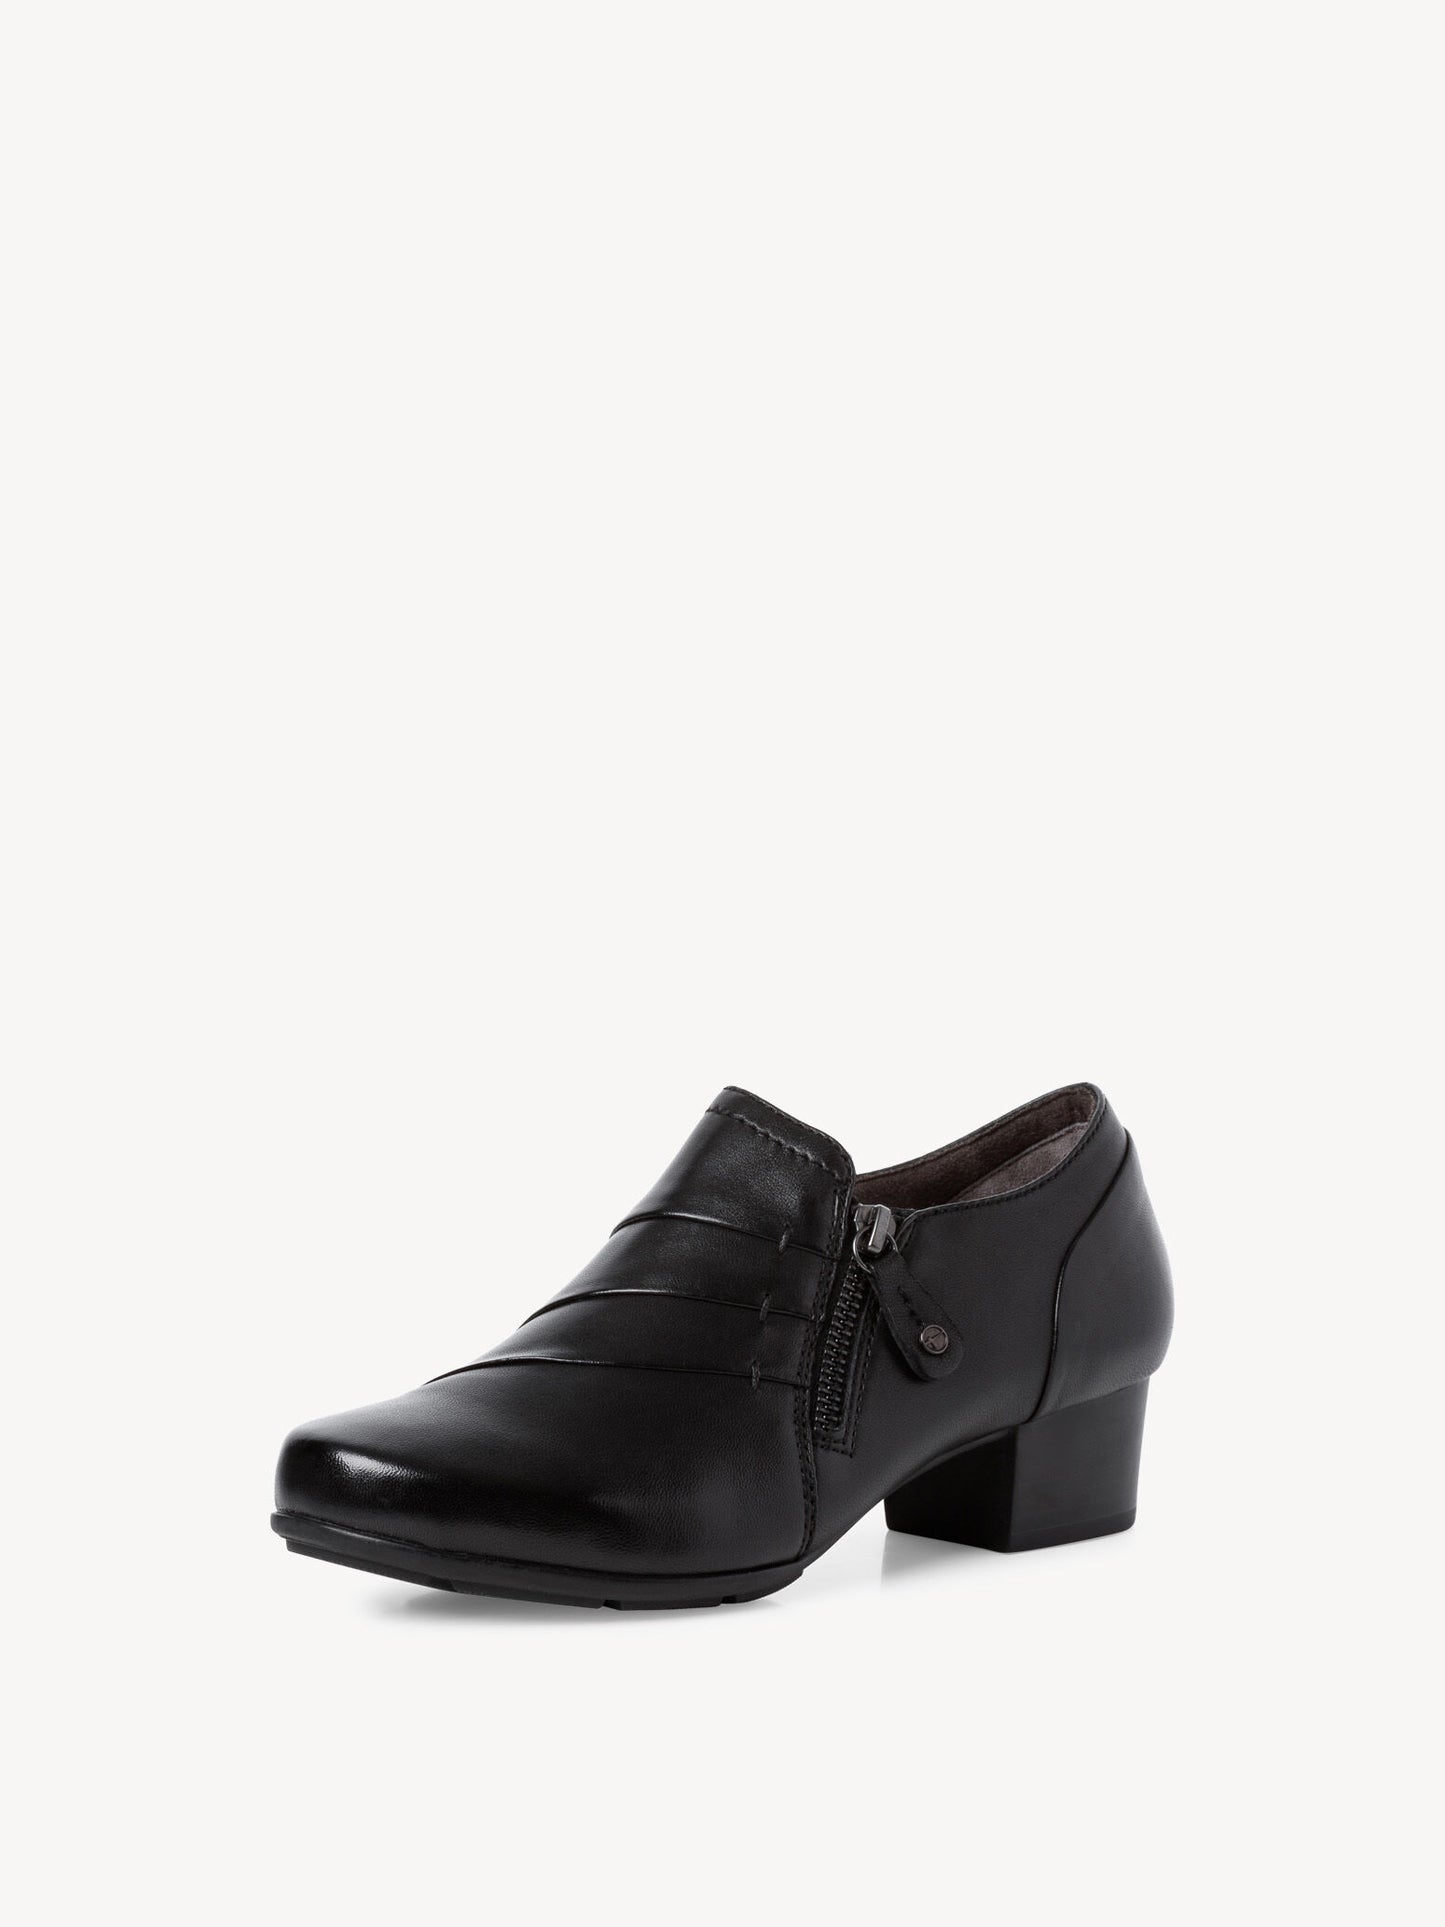 Tamaris Women's 8-8-84300-29 Leather Trotteur Shoes Black